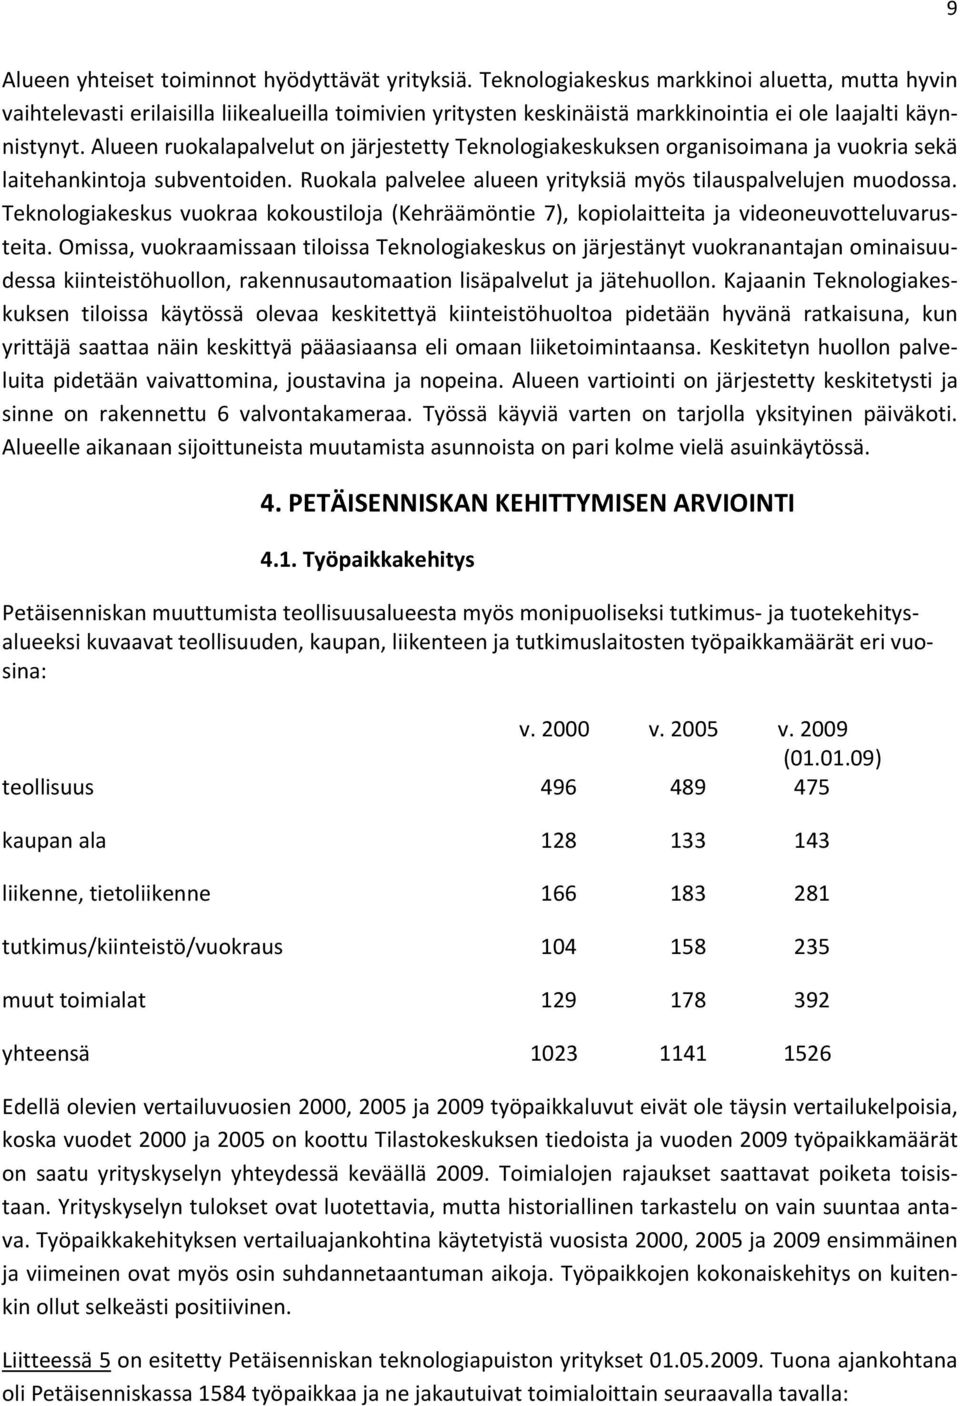 Teknologiakeskusvuokraakokoustiloja(Kehräämöntie7),kopiolaitteitajavideoneuvotteluvarus teita.